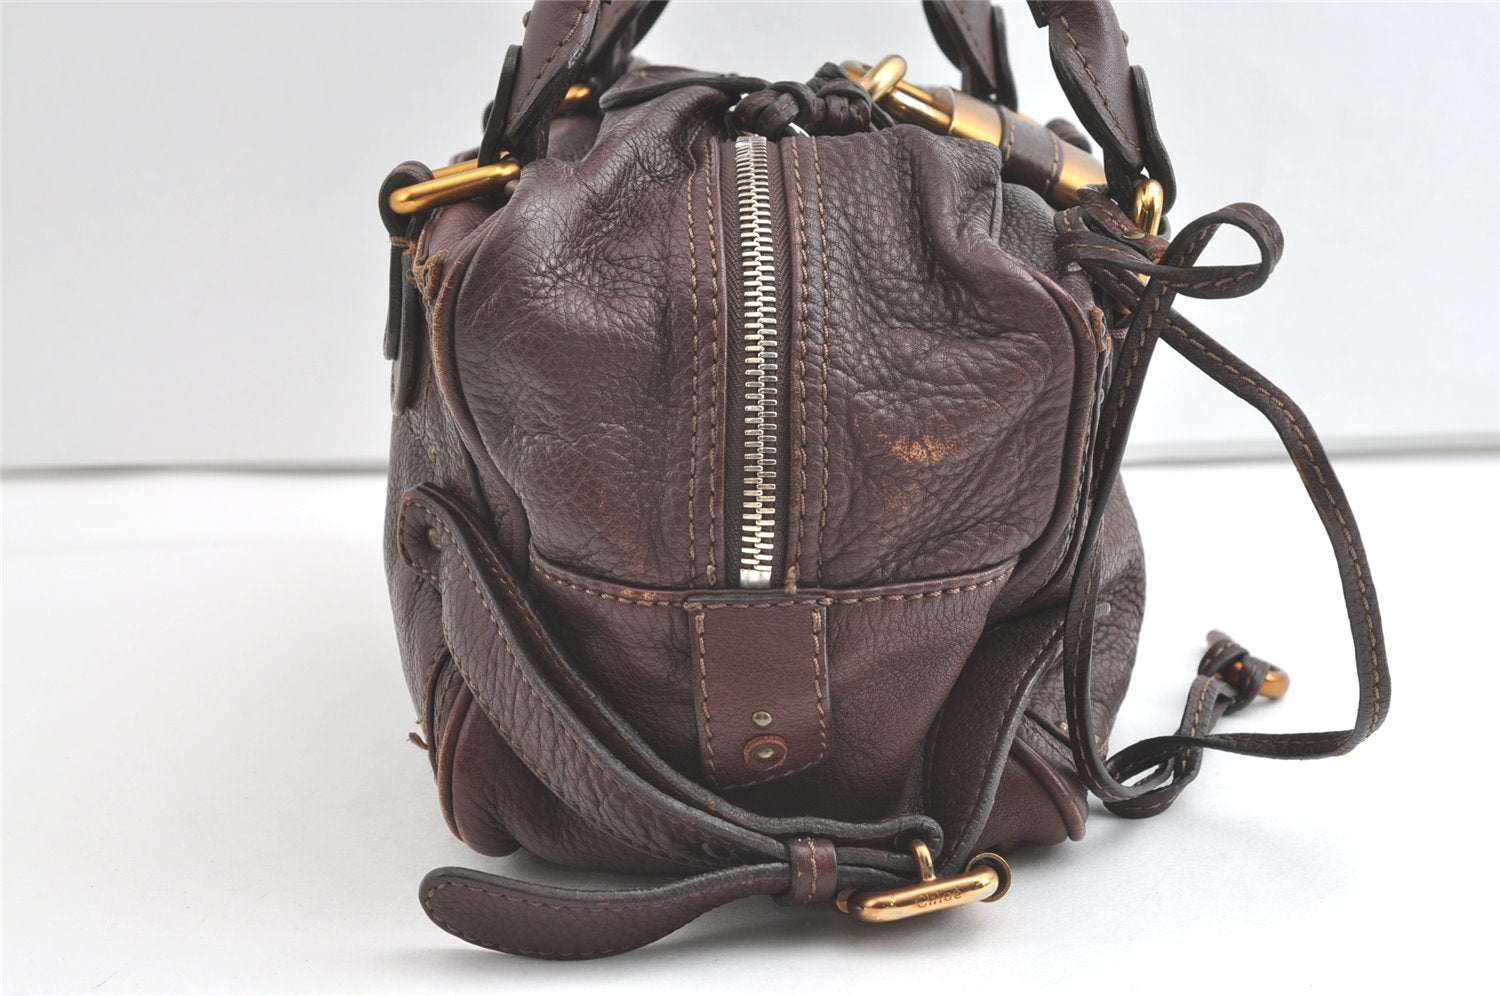 Authentic Chloe Paddington Leather Shoulder Hand Bag Purse Brown 7891J